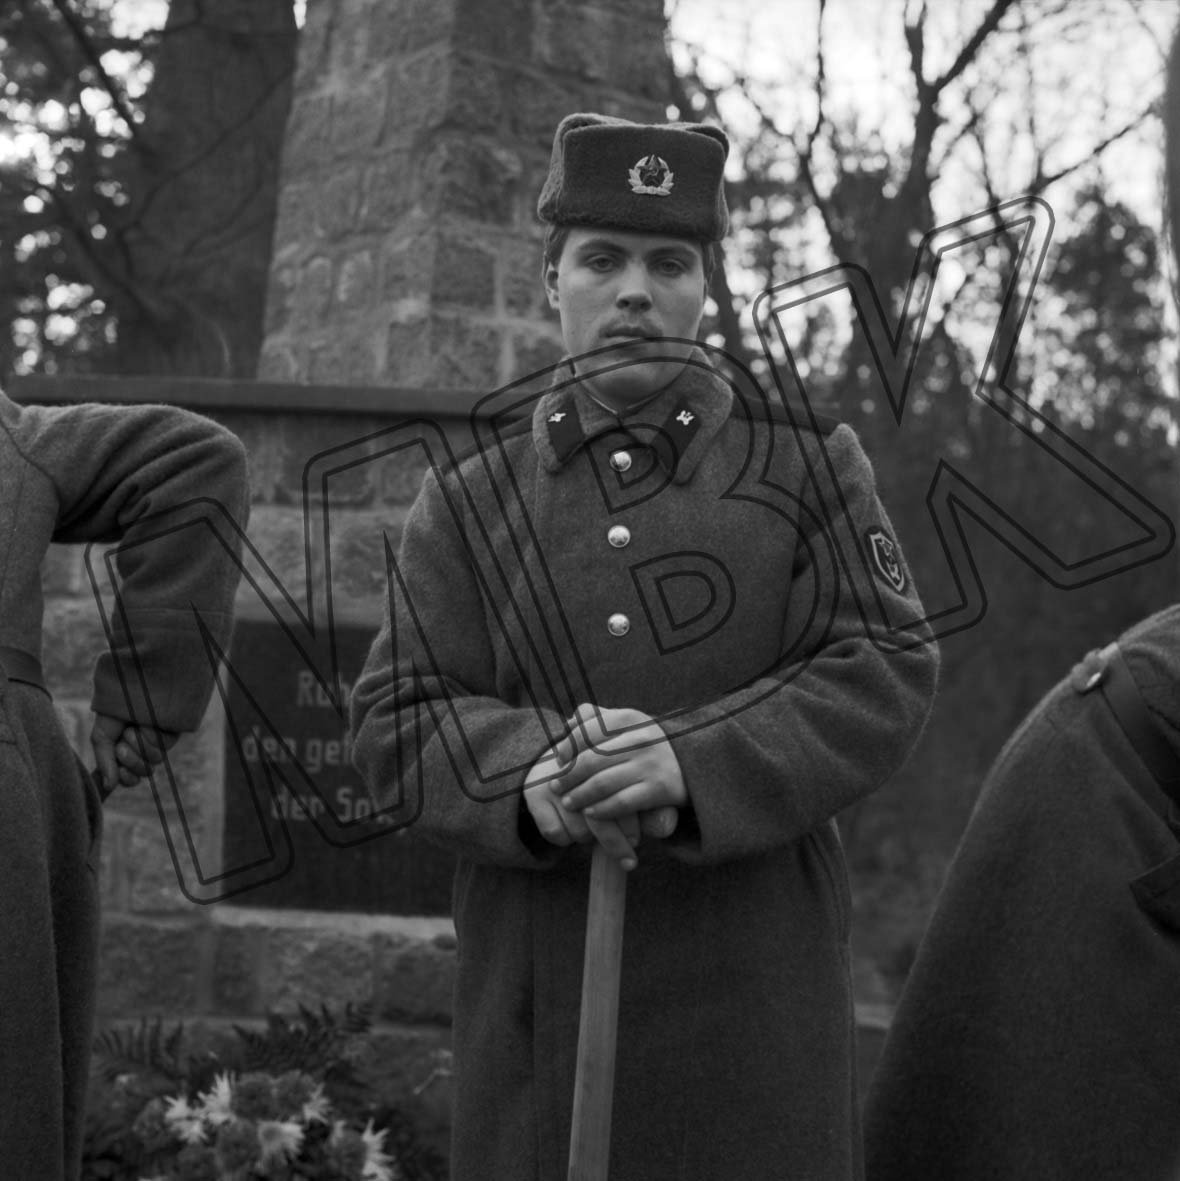 Fotografie: Umbettung der Gebeine von sowjetischen Gefallenen auf den Friedhof, Briesen , Dezember 1992 (Museum Berlin-Karlshorst RR-P)